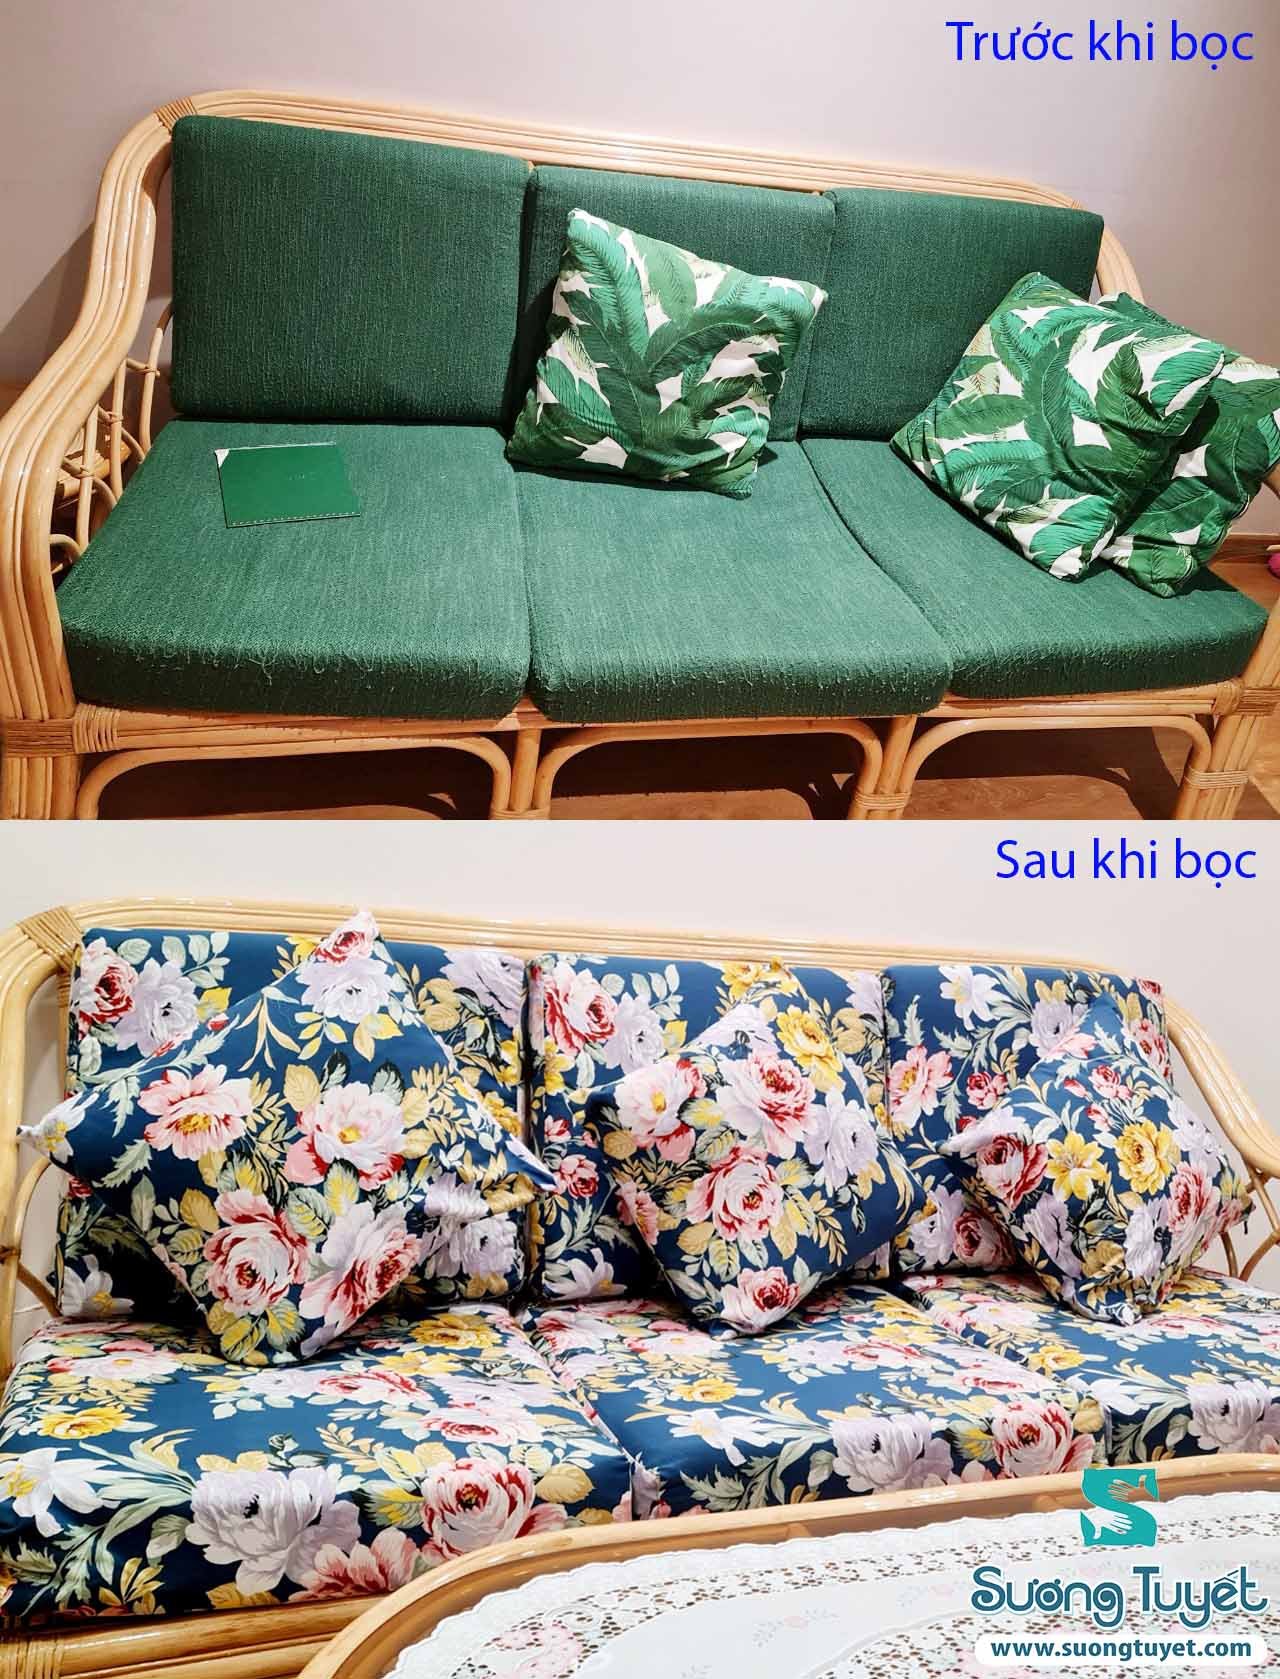 Hình ảnh trước và sau khi bọc nệm ghế cho khách yêu.